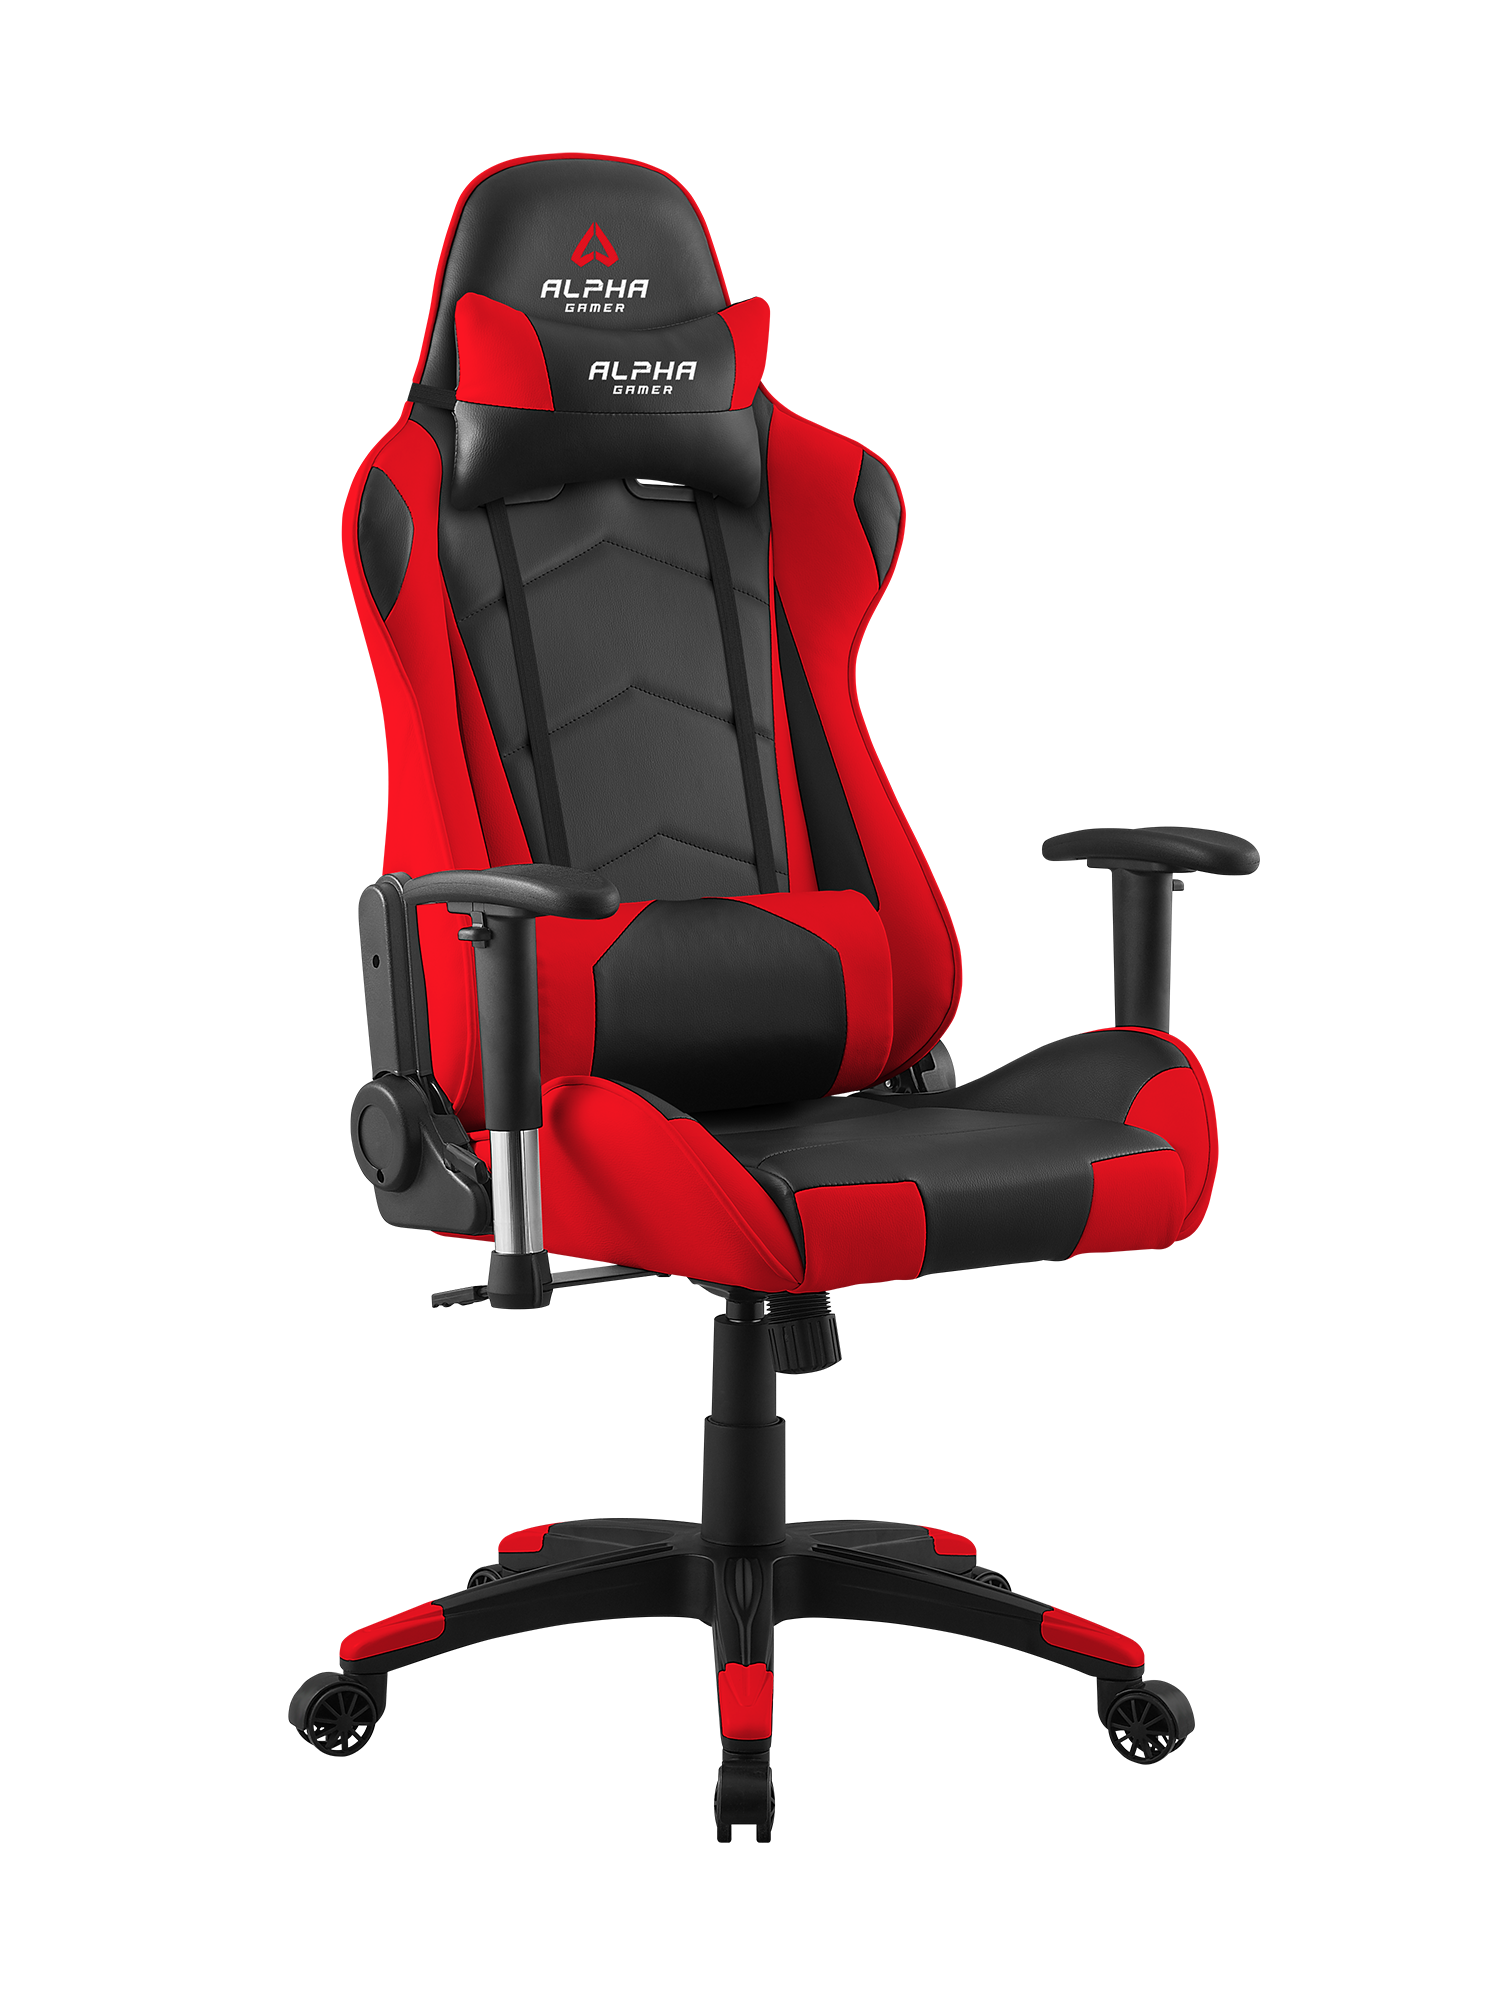 Игровое кресло DXRACER красное. Геймерское кресло Gamer Red. Кресло Дикс рейсер. DXRACER g8000 кресло.